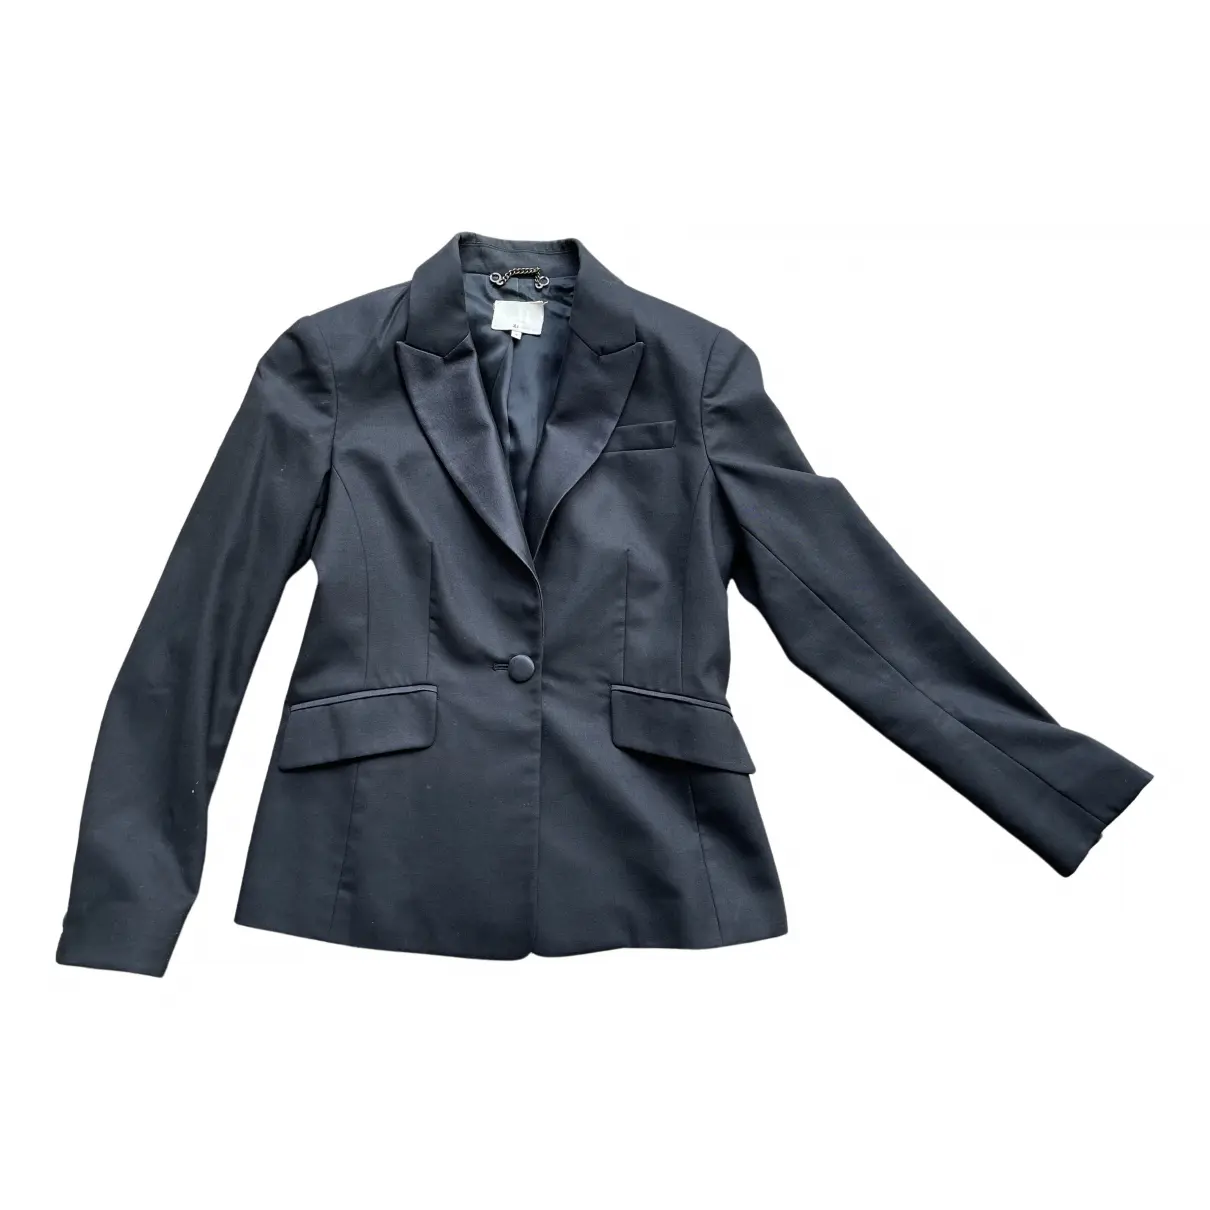 Wool suit jacket 3.1 Phillip Lim